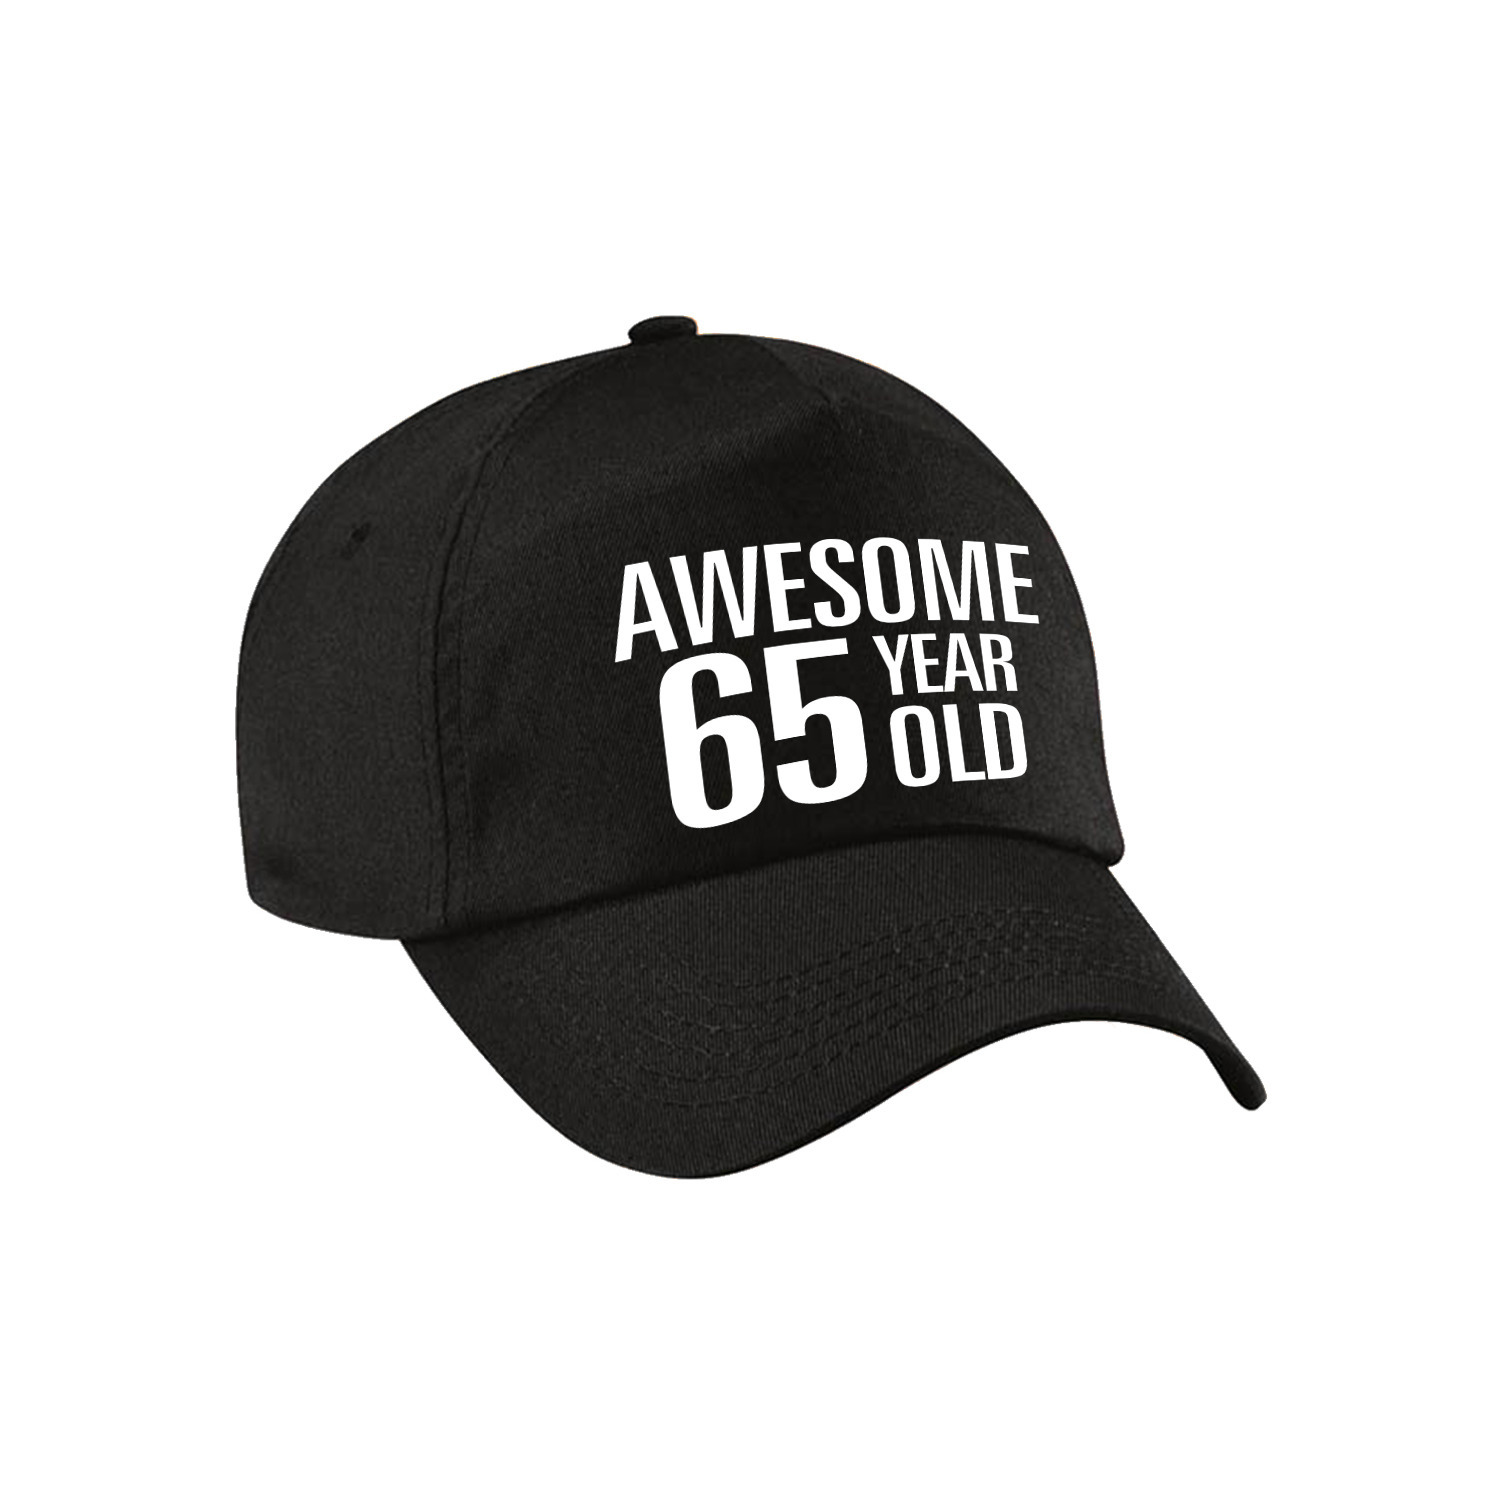 Awesome 65 year old verjaardag pet / cap zwart voor dames en heren